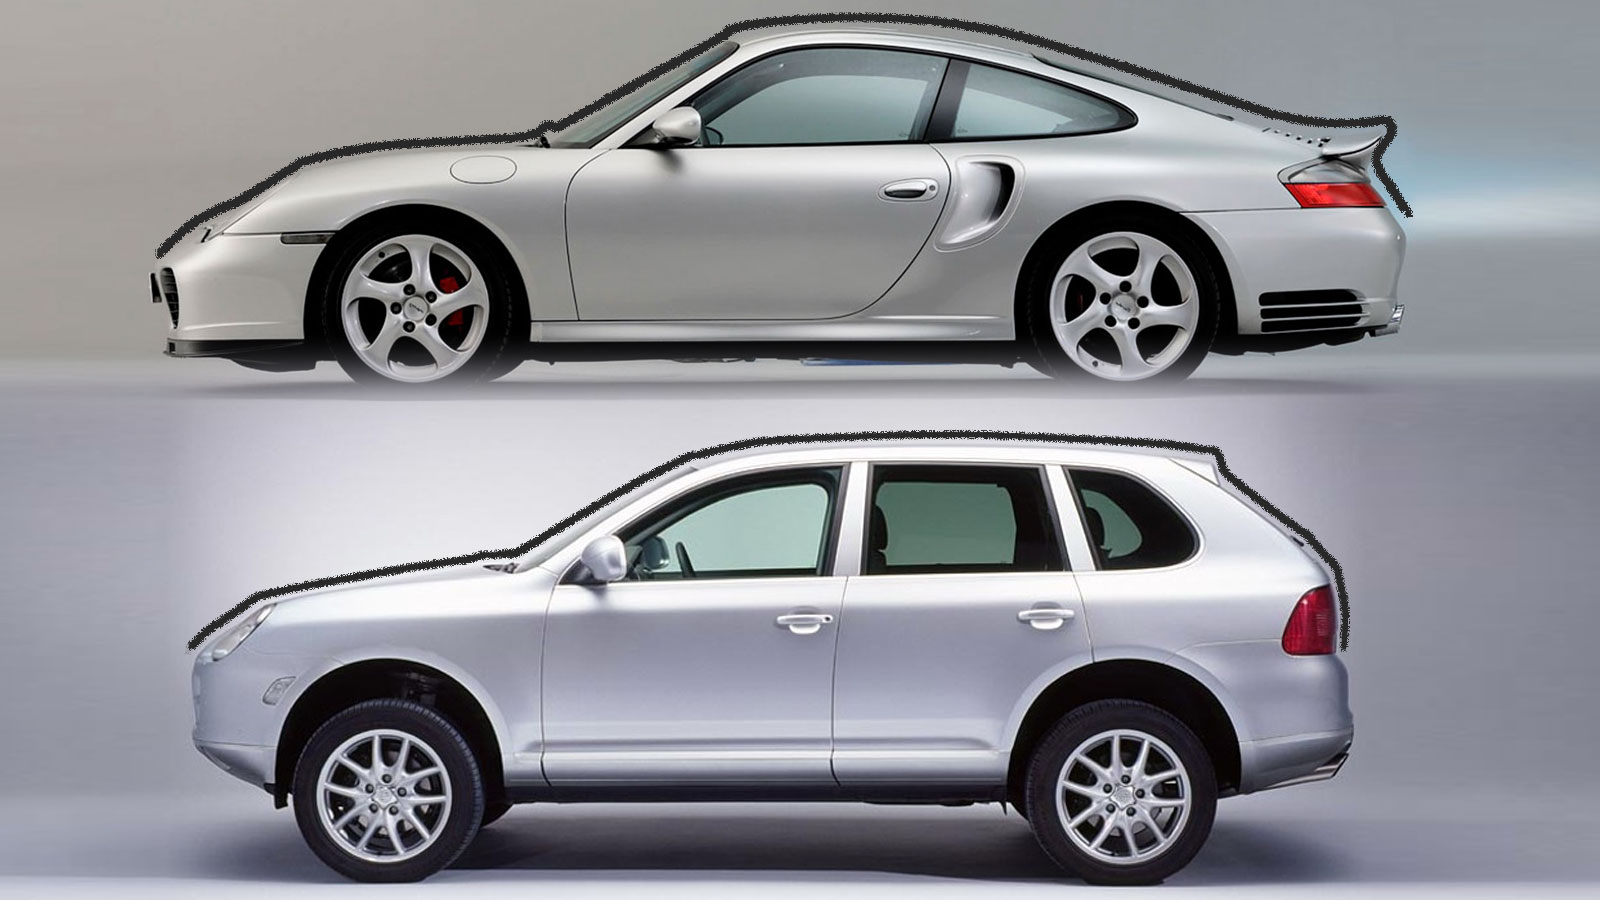 Παρότι είναι δύο εντελώς διαφορετικά αυτοκίνητα, η σχεδιαστική γραμμή της 911 της εποχής εμφανίζεται και στην Cayenne.